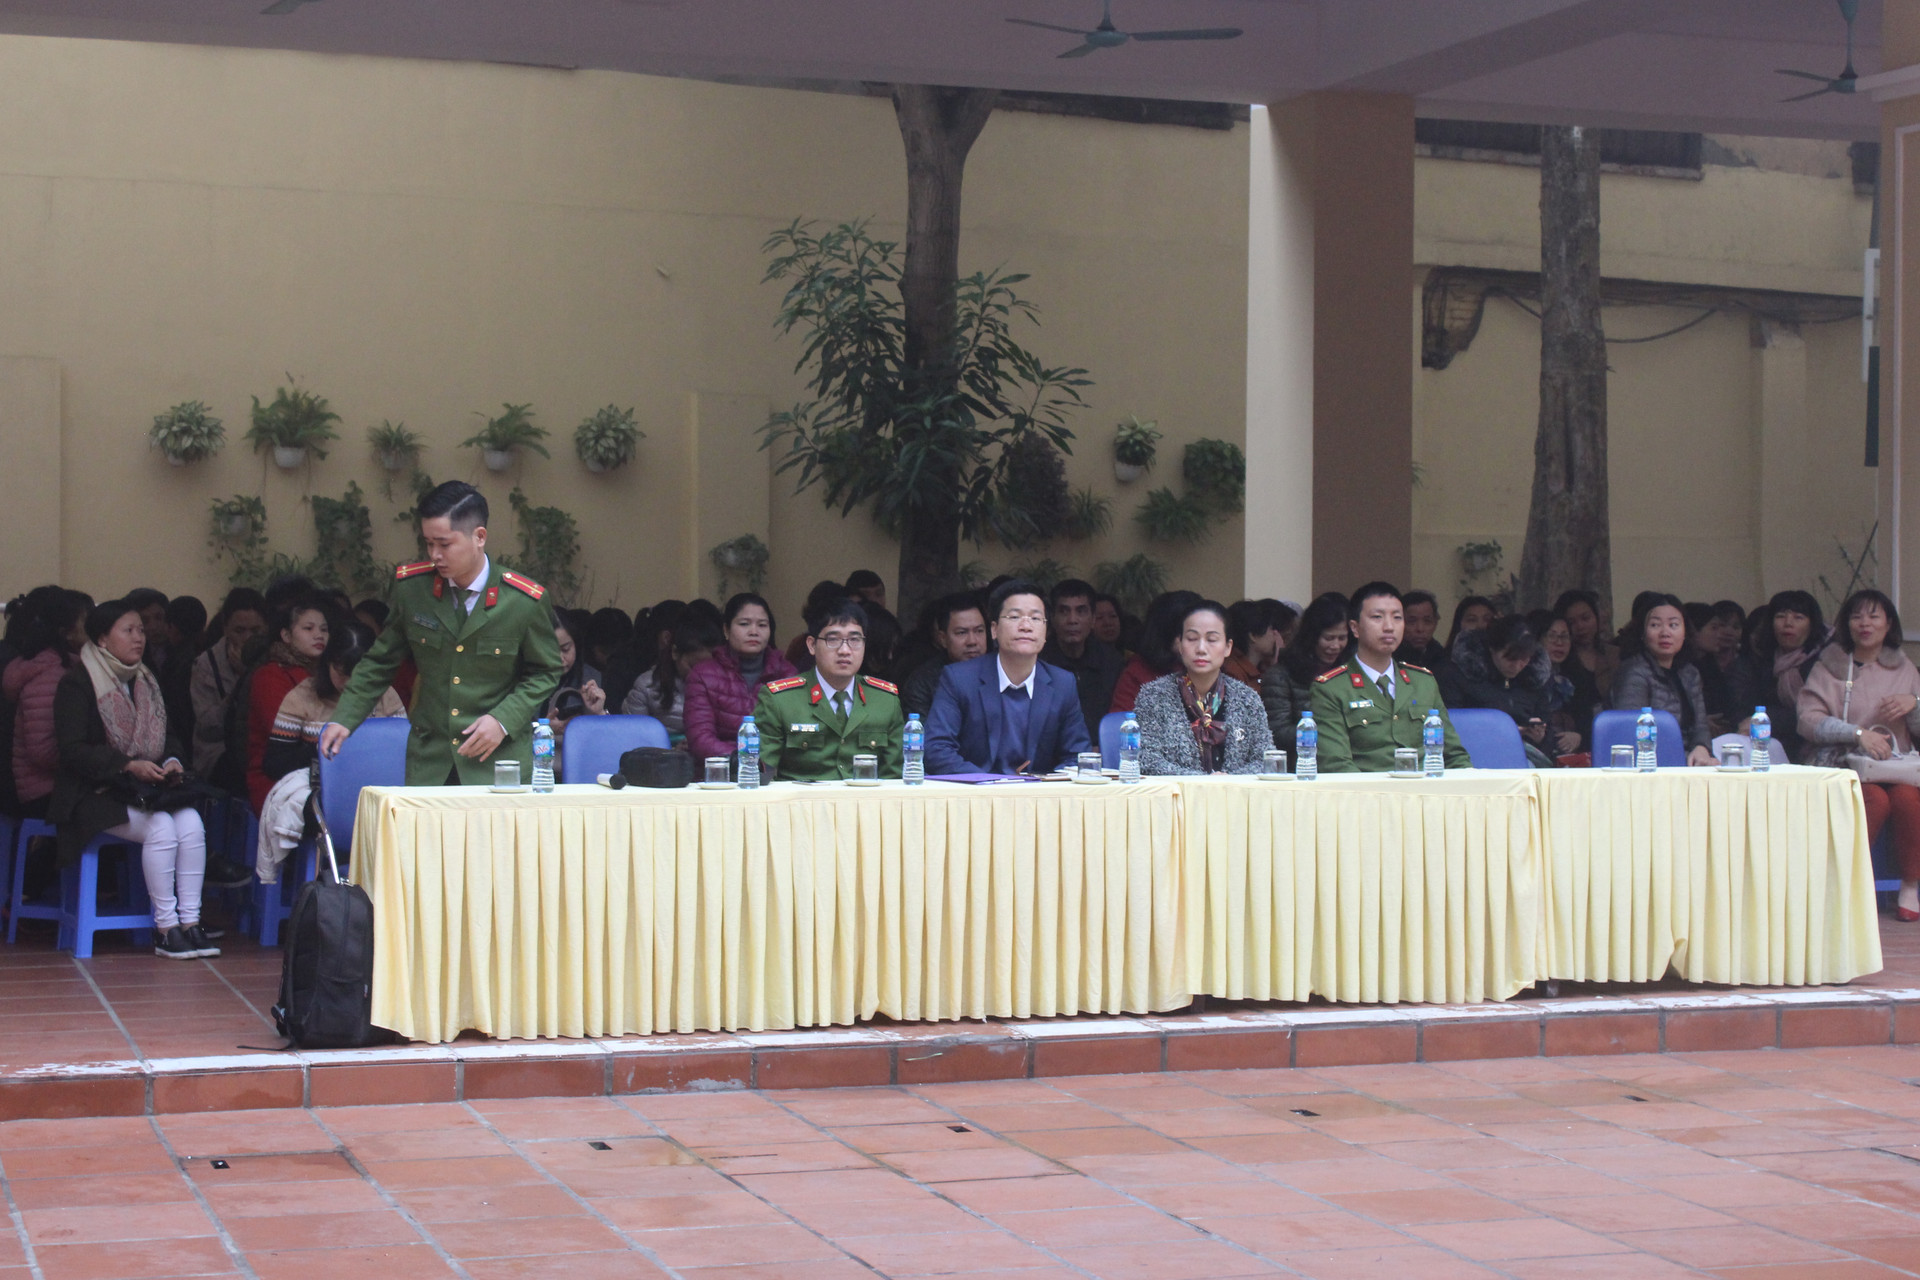 Hà Nội: Công an Quận Hoàn Kiếm và Phòng Giáo dục & Đào tạo quận Hoàn Kiếm phối hợp tổ chức tập huấn nghiệp vụ PCCC & CNCH